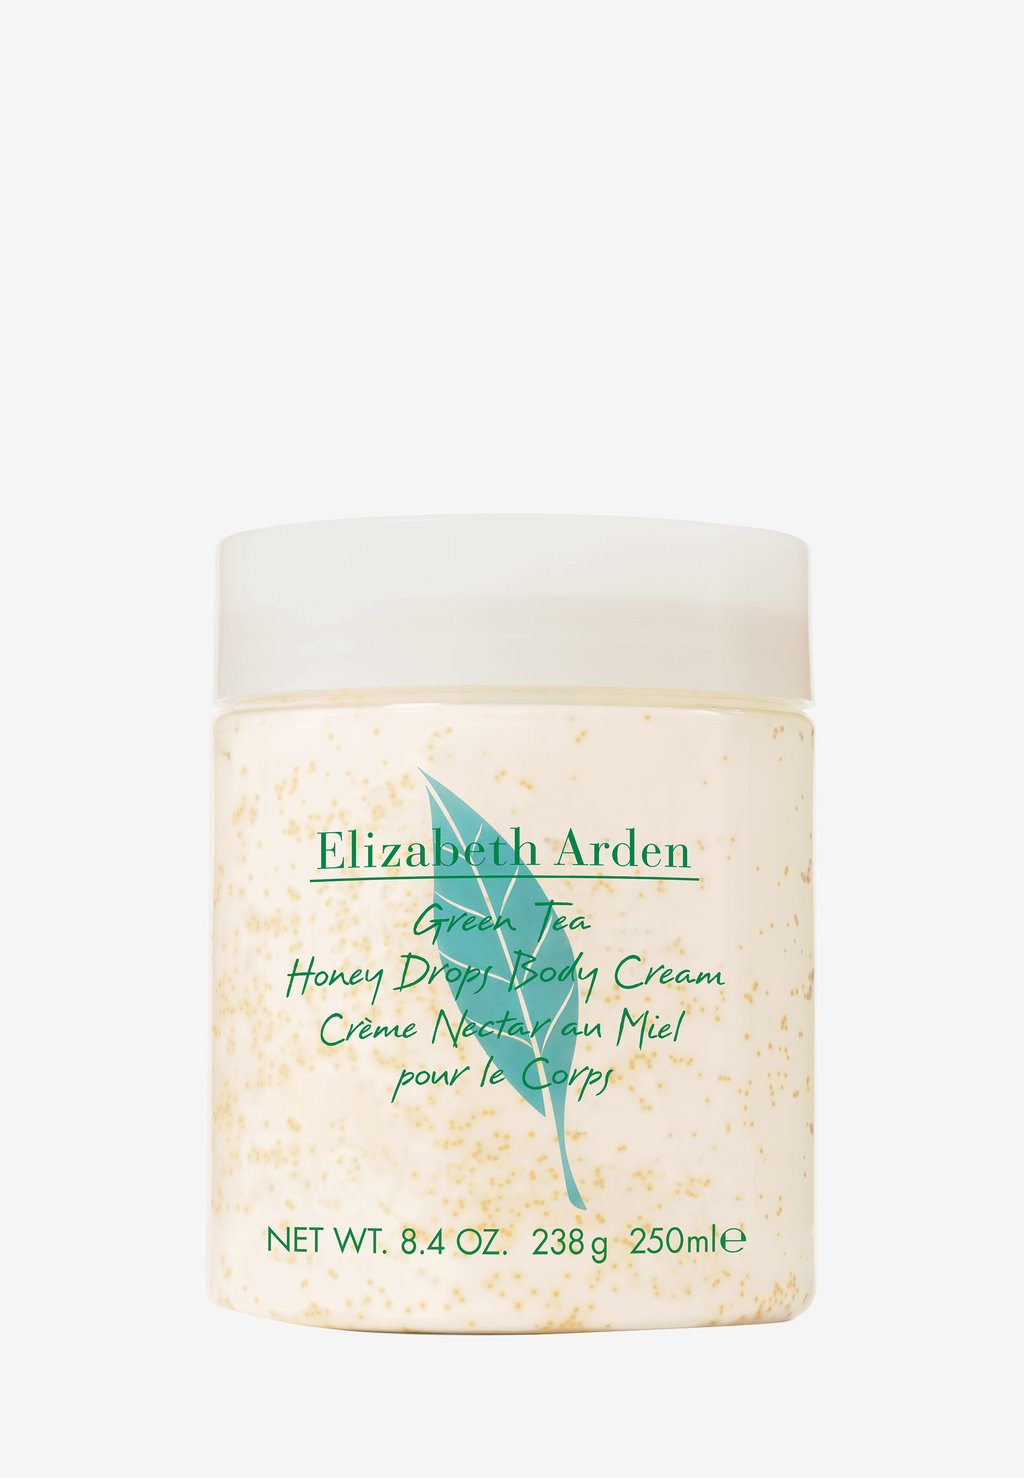 Увлажняющий крем ELIZABETH ARDEN GREEN TEA HONEY DROPS BODY CREAM крем для тела green tea body cream honey drops elizabeth arden 500 ml